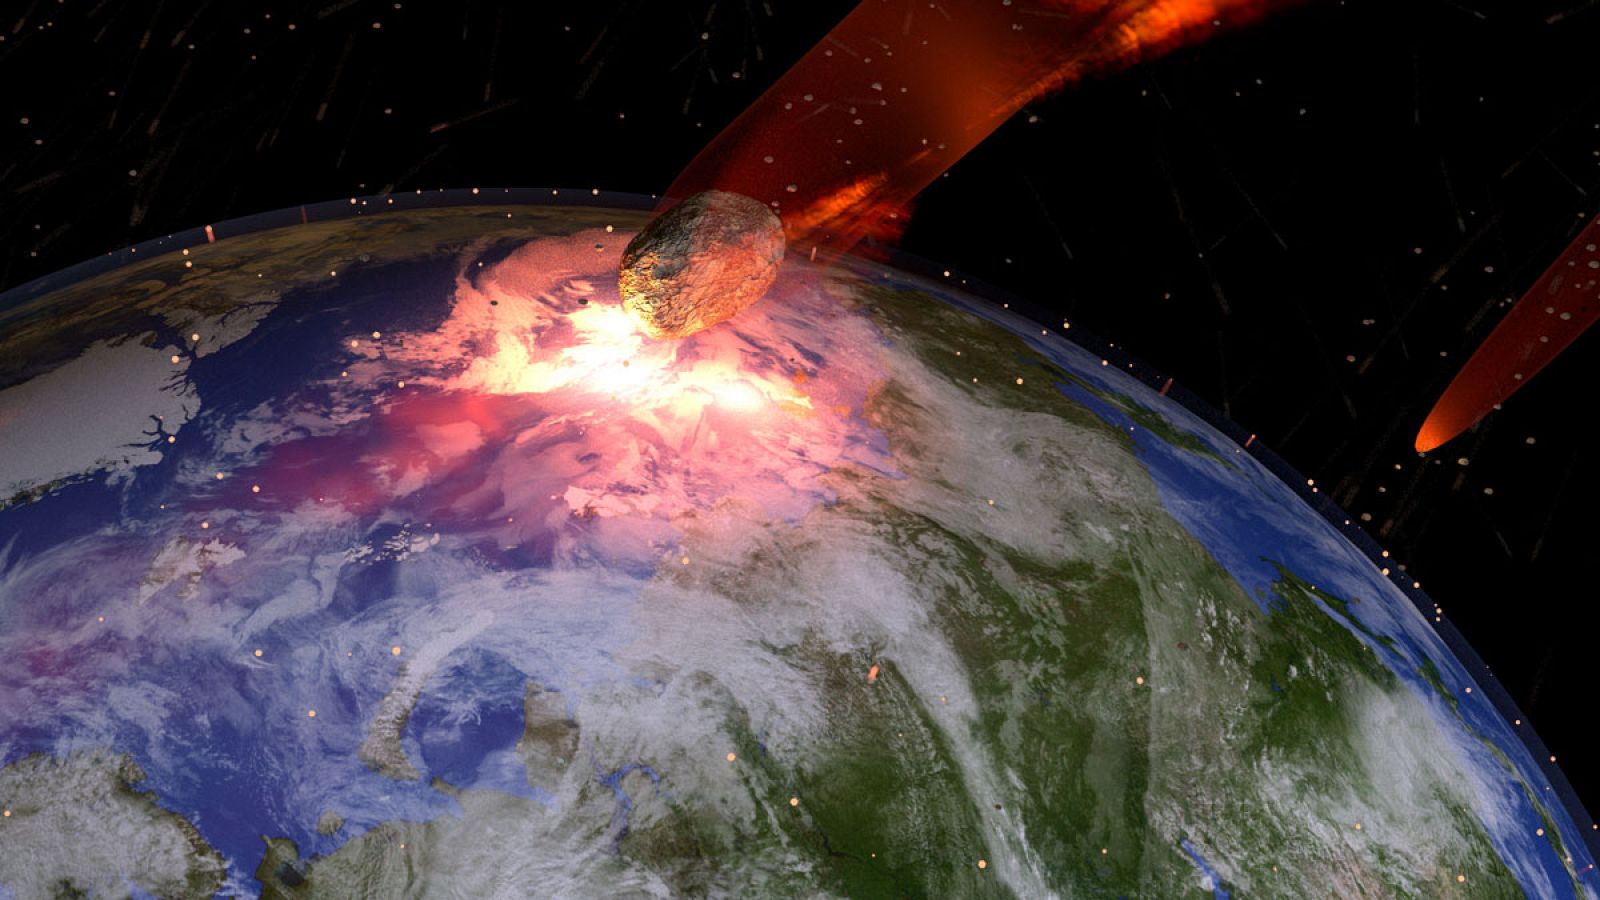 Representación artística de un meteorito impactando contra el planeta Tierra.